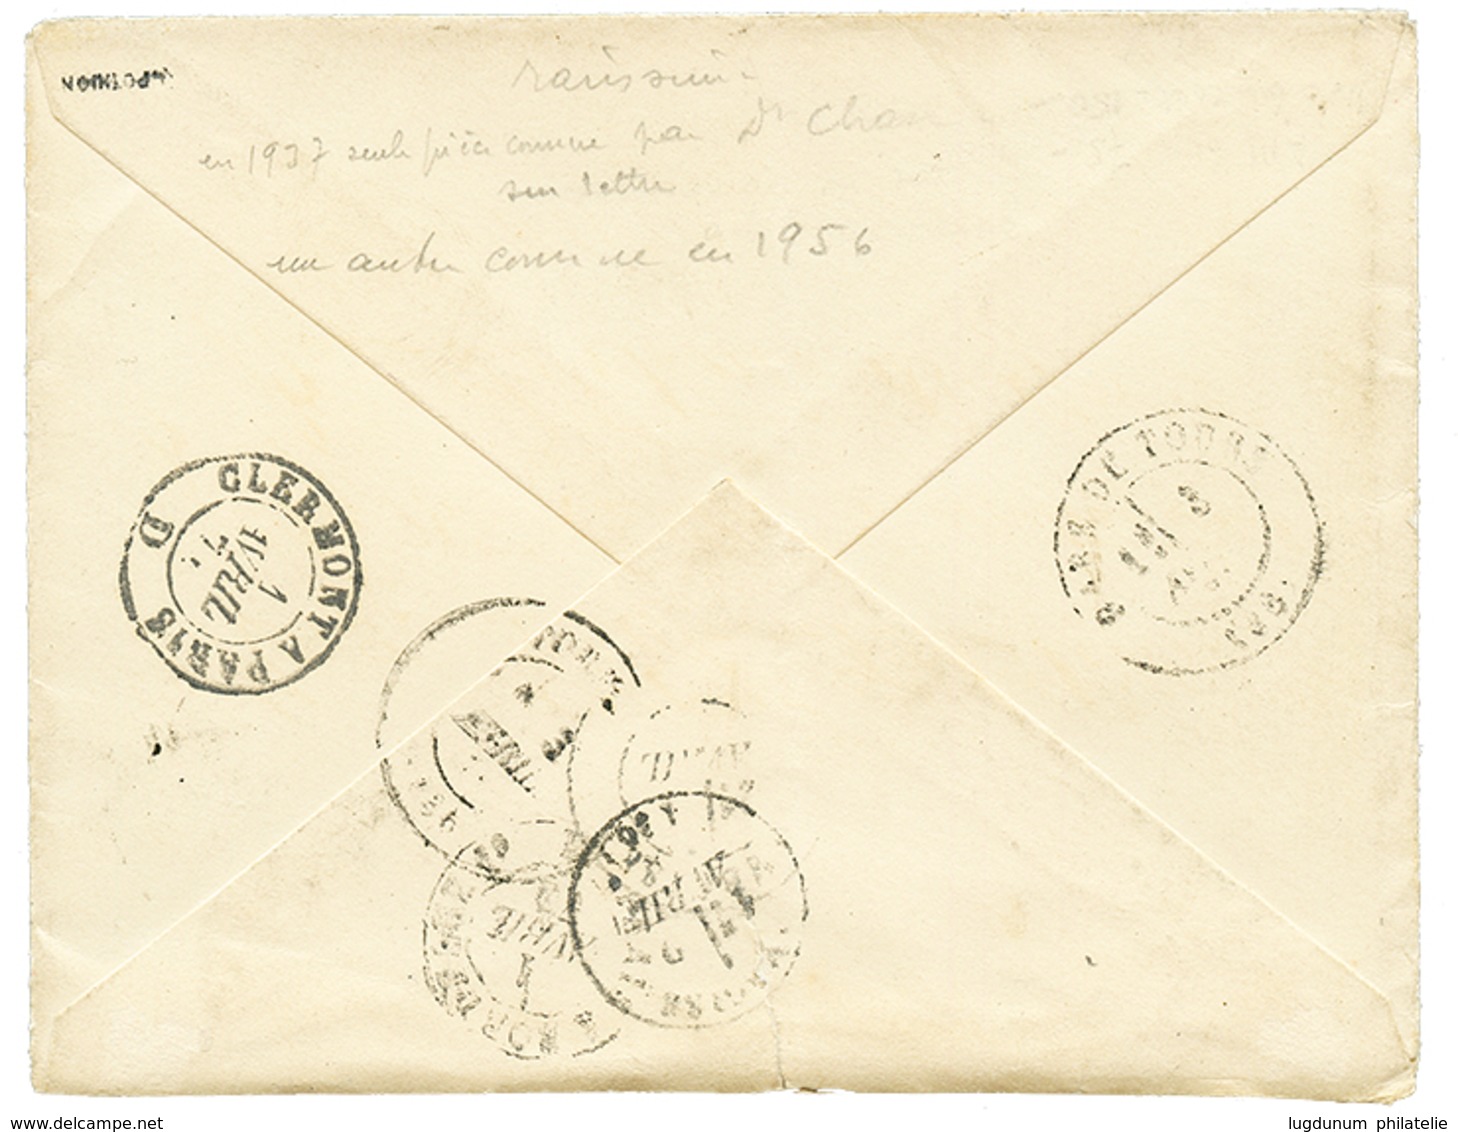 211 LA CHARITE BOITE DE GARE : 1874 25c(n°60) Obl. GC 897BG Sur Enveloppe Pour AMBOISE. Rare. Cote 950€. TB. - 1871-1875 Cérès